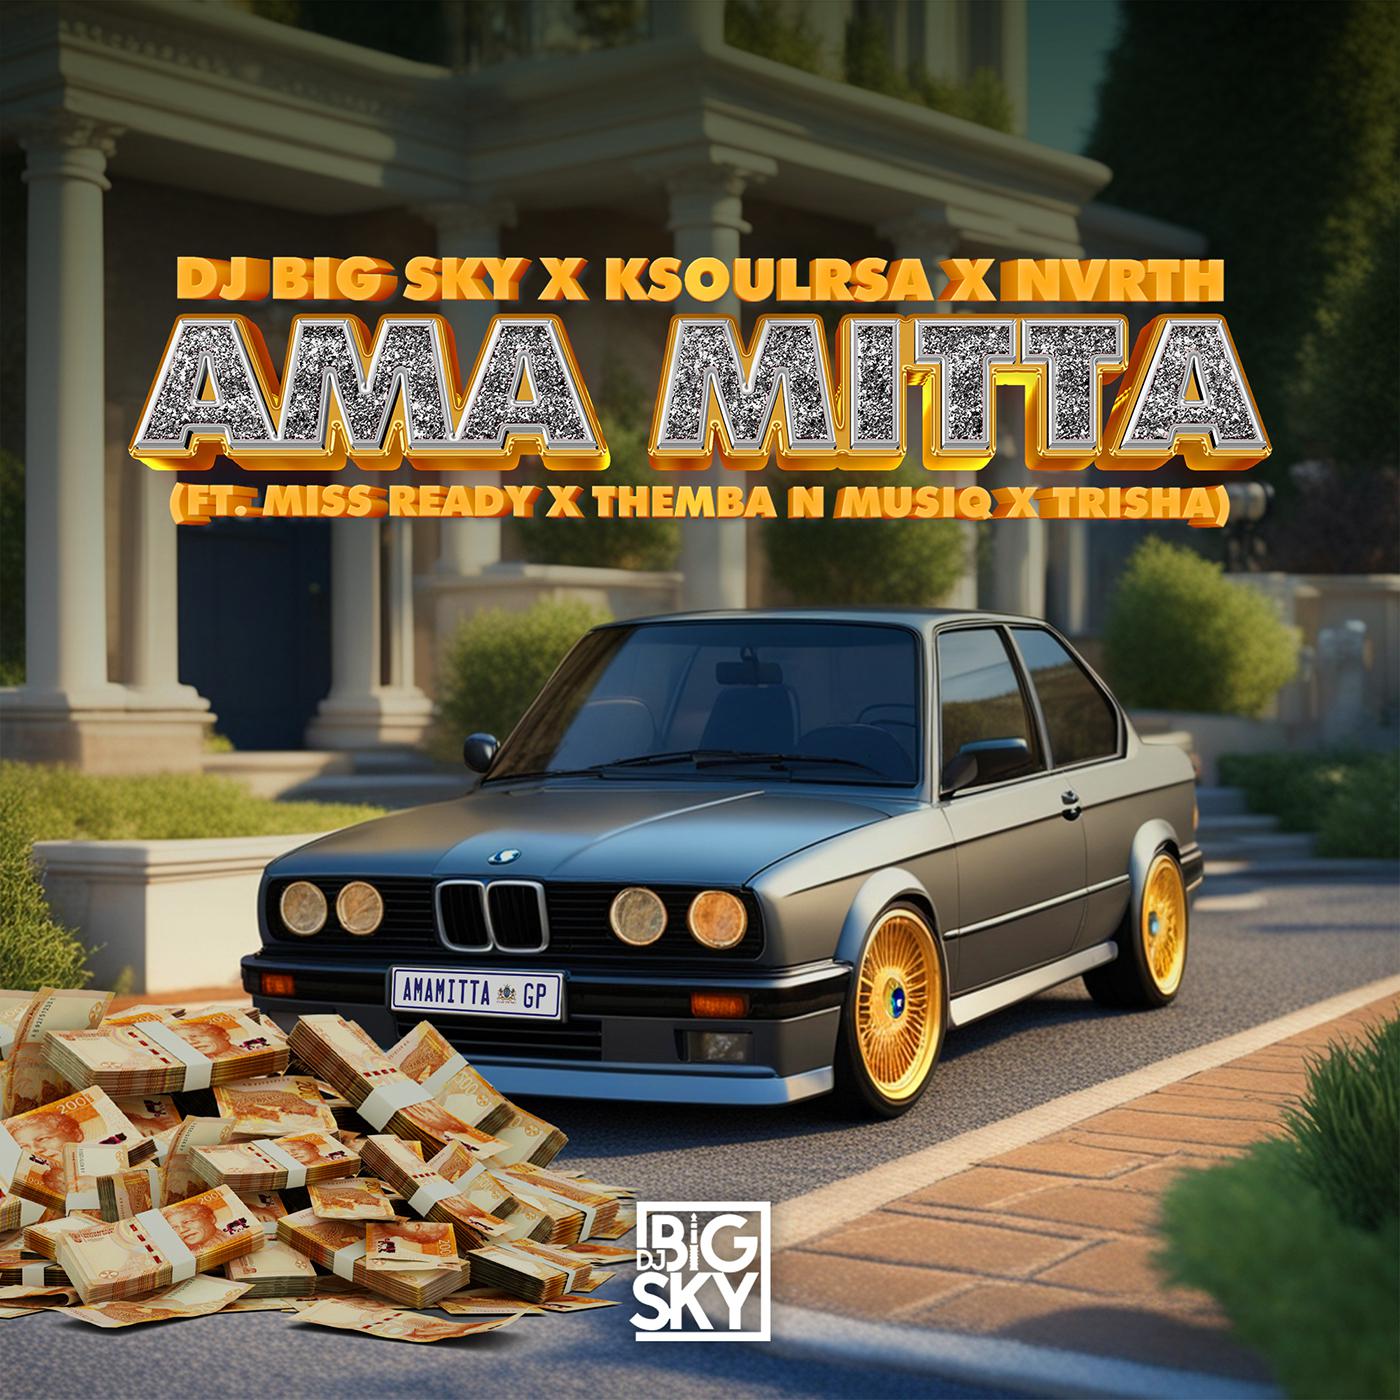 DJ Big Sky - AMA MITTA (feat. MISS READY, THEMBA N MUSIQ, TRISHA)